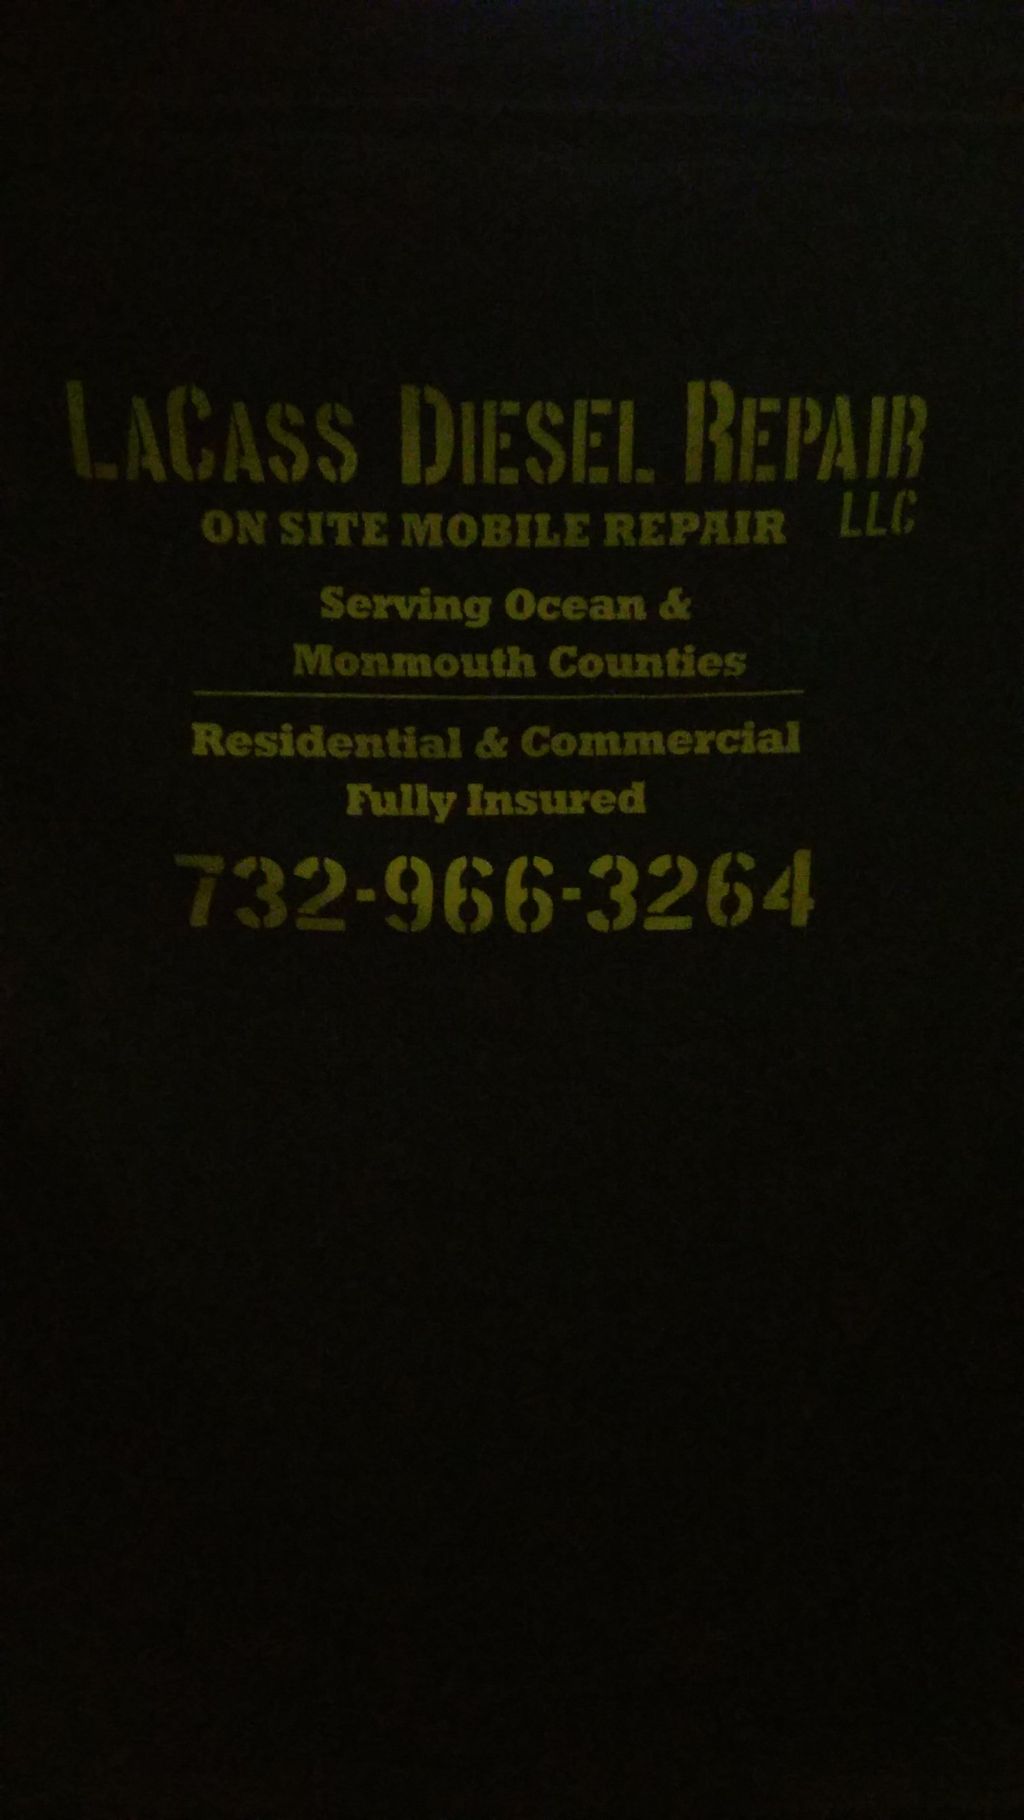 laCass diesel repair